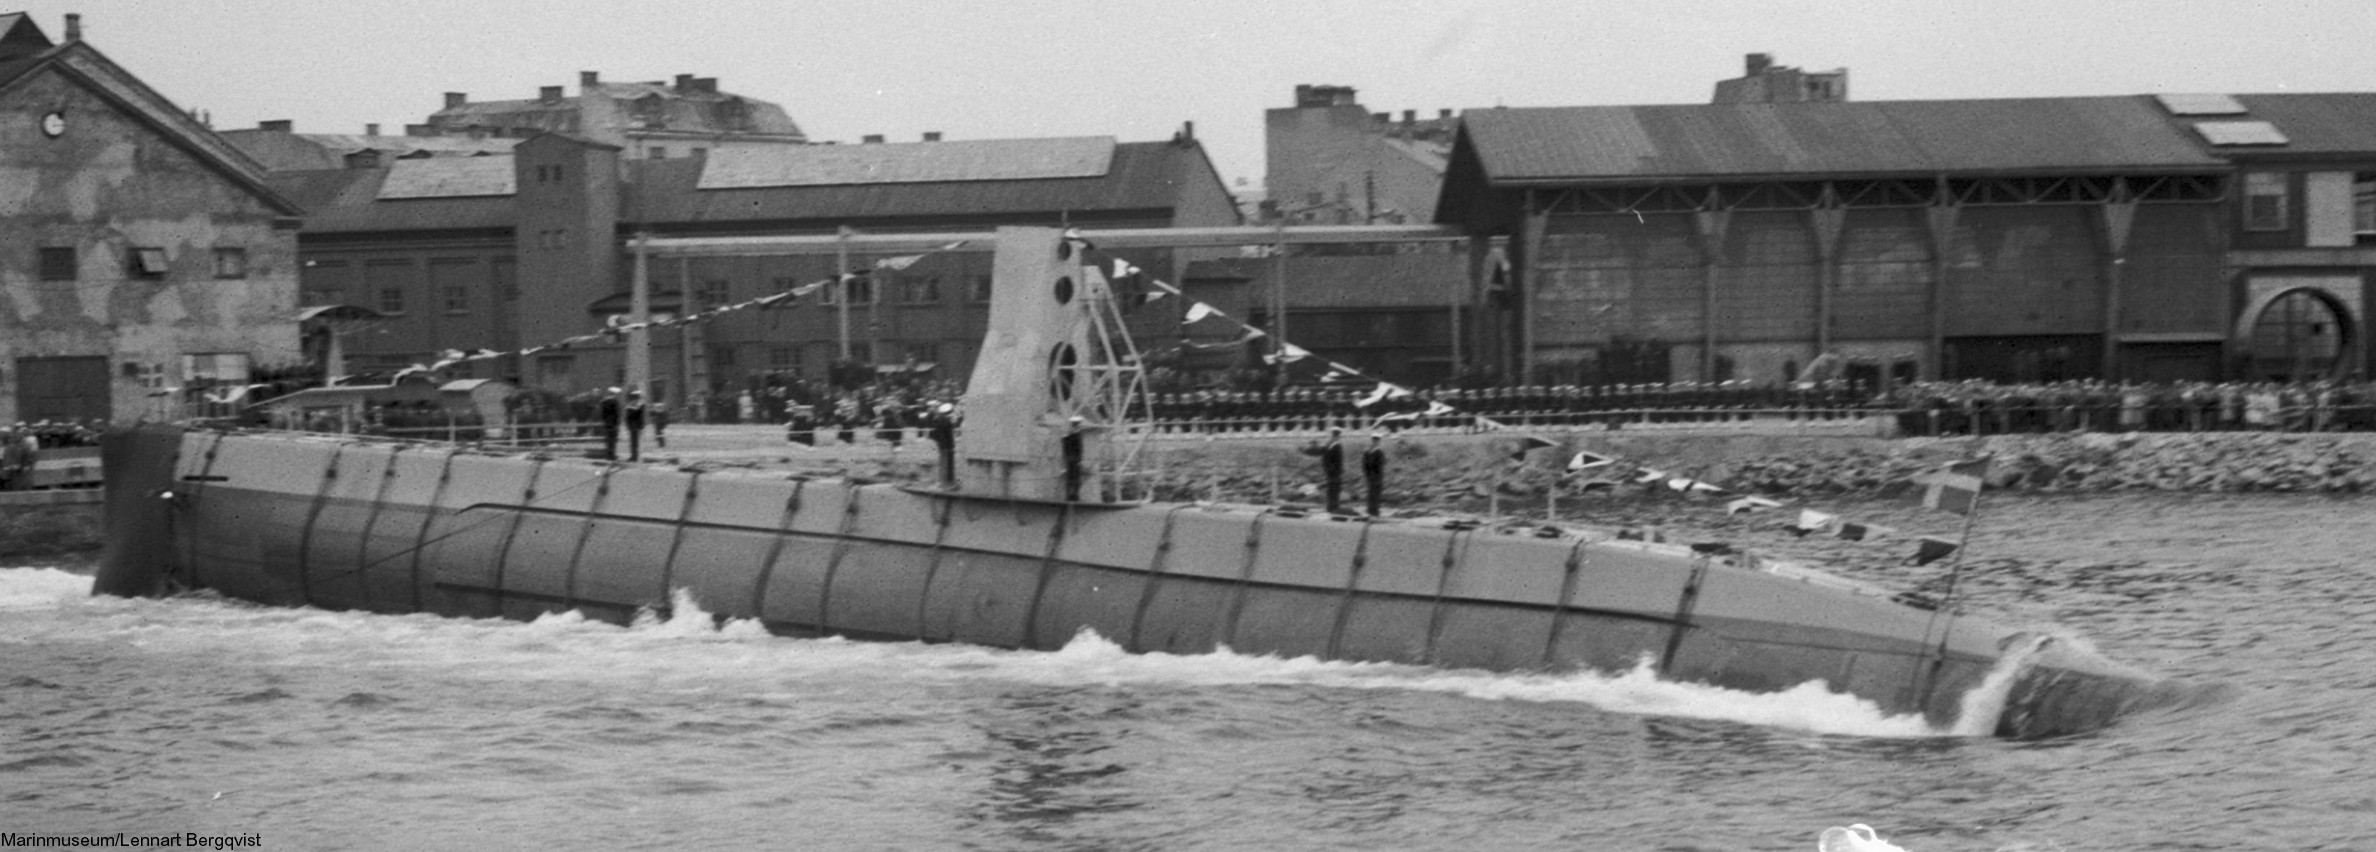 hms hswms gripen draken a12 class attack submarine ubåt swedish navy svenska marinen försvarsmakten 02